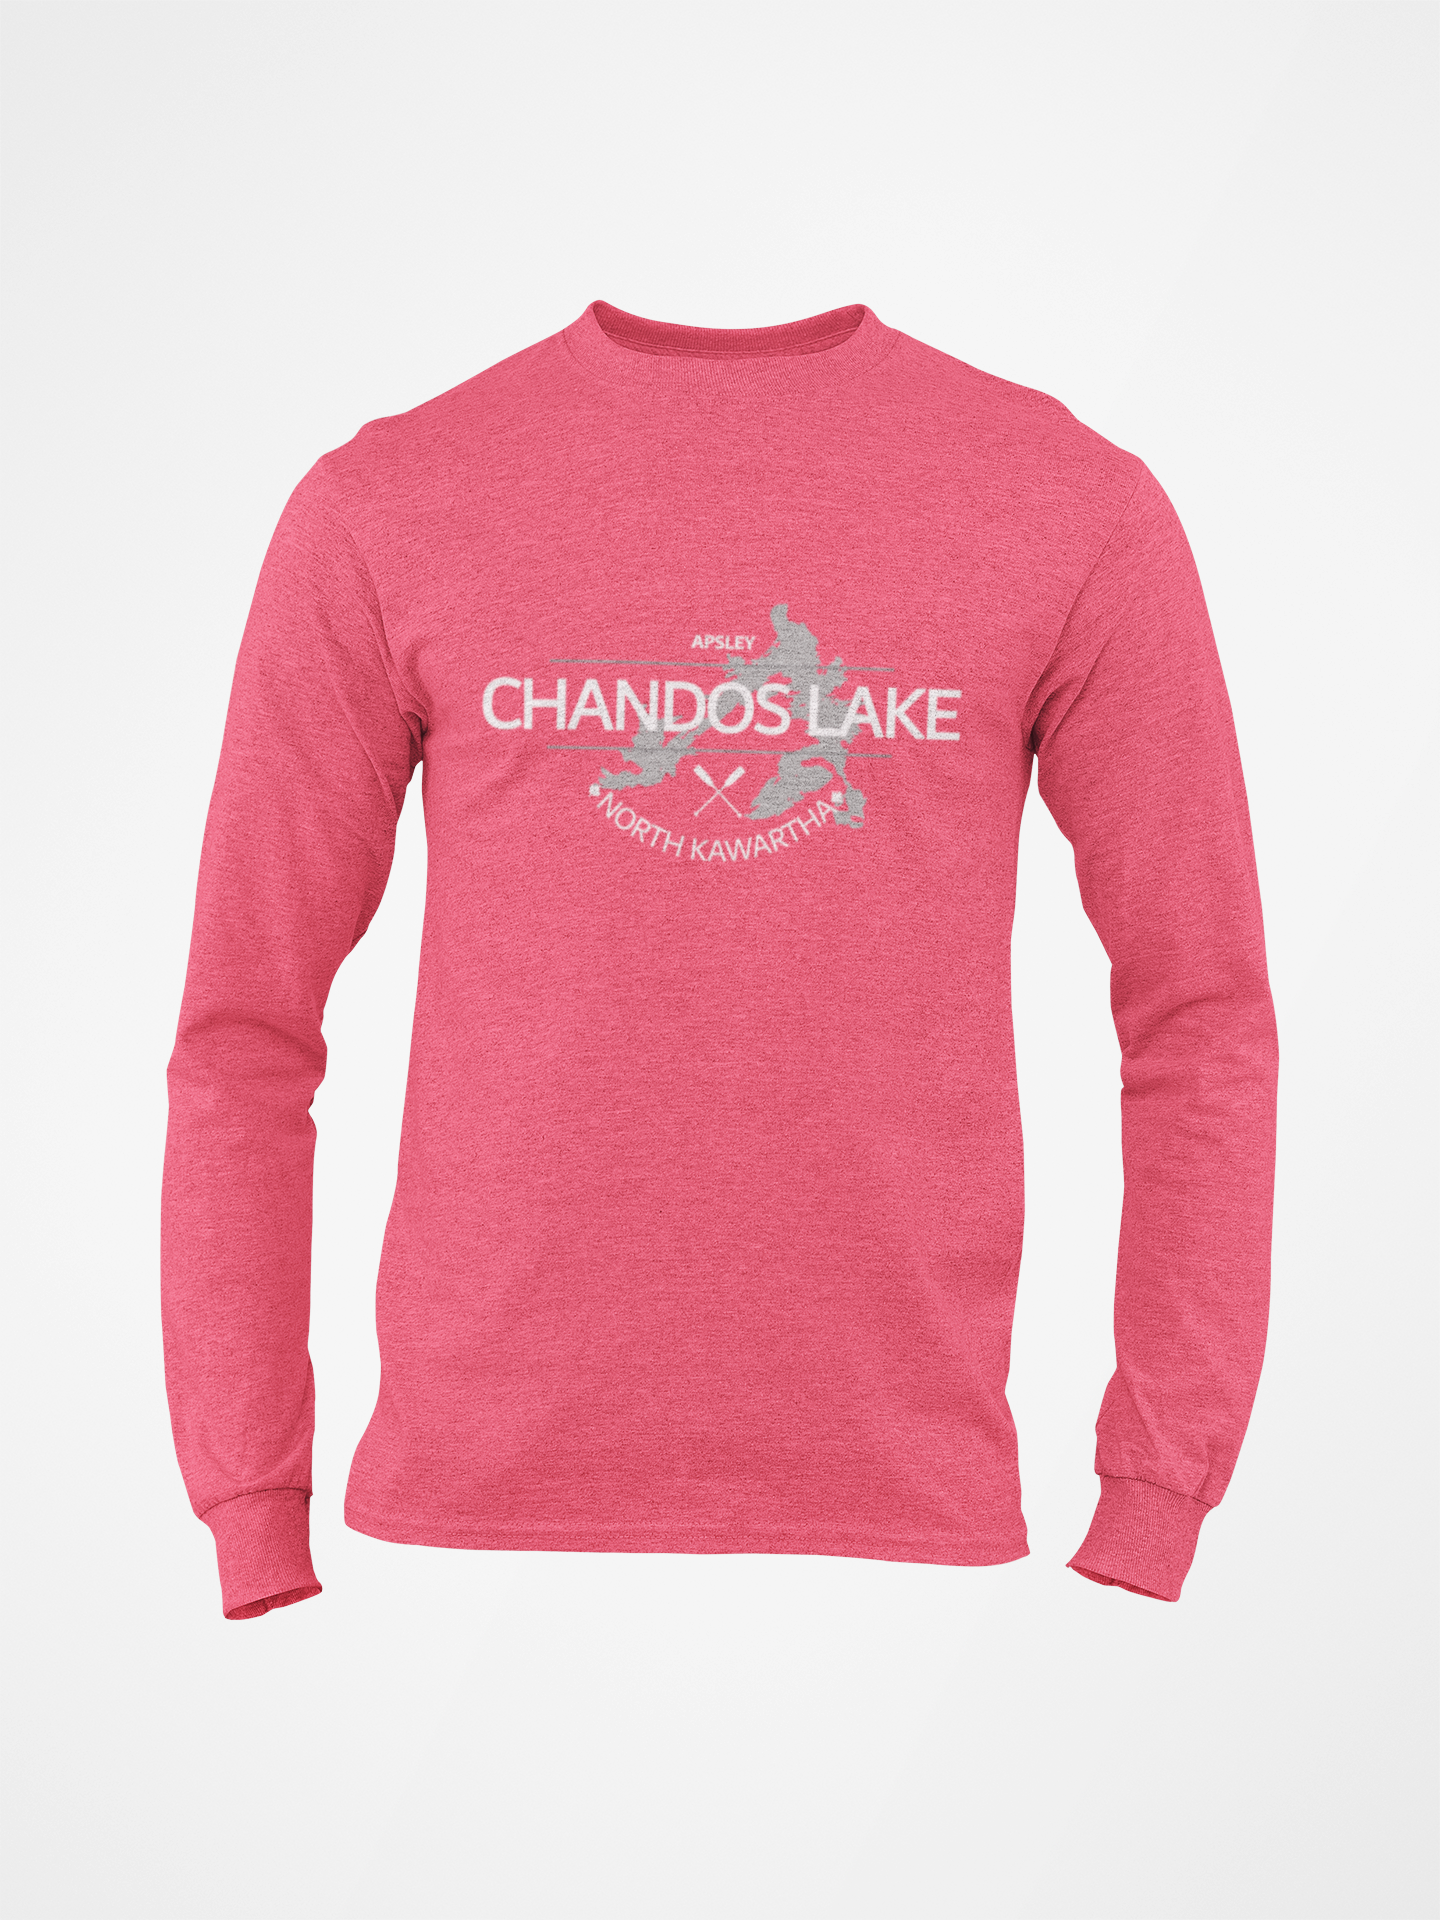 Chandos Lake Youth Long Sleeve